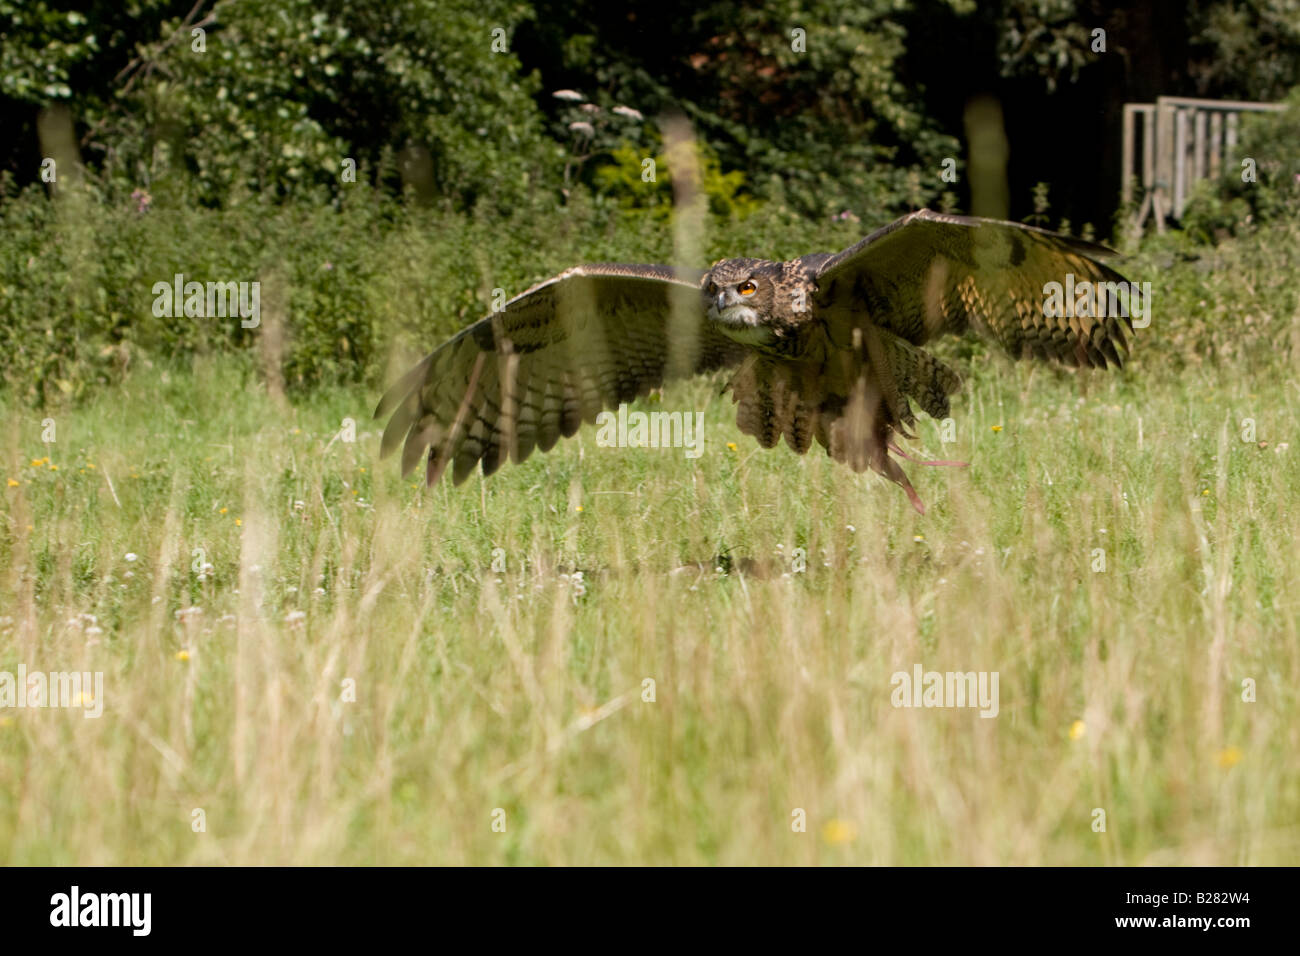 Eagle européennes d'Amérique, Bubo bubo, volant juste au-dessus du niveau du sol Banque D'Images